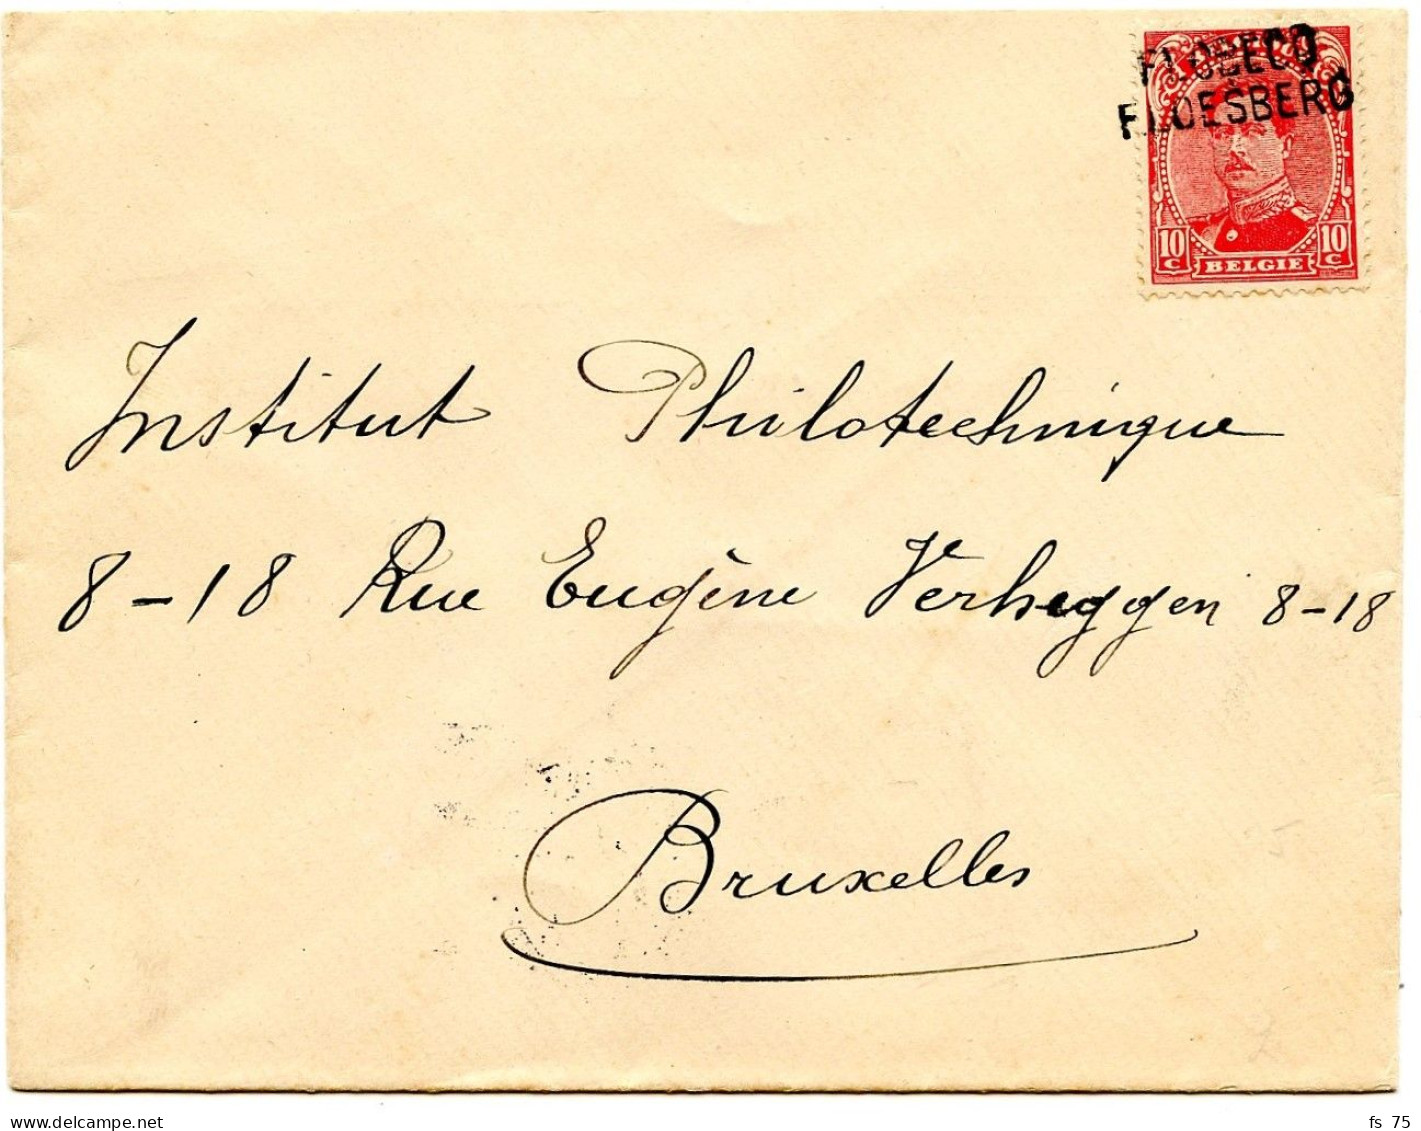 BELGIQUE - COB 138  GRIFFE BILINGUE FLOBECQ SUR LETTRE, 1919 - Storia Postale